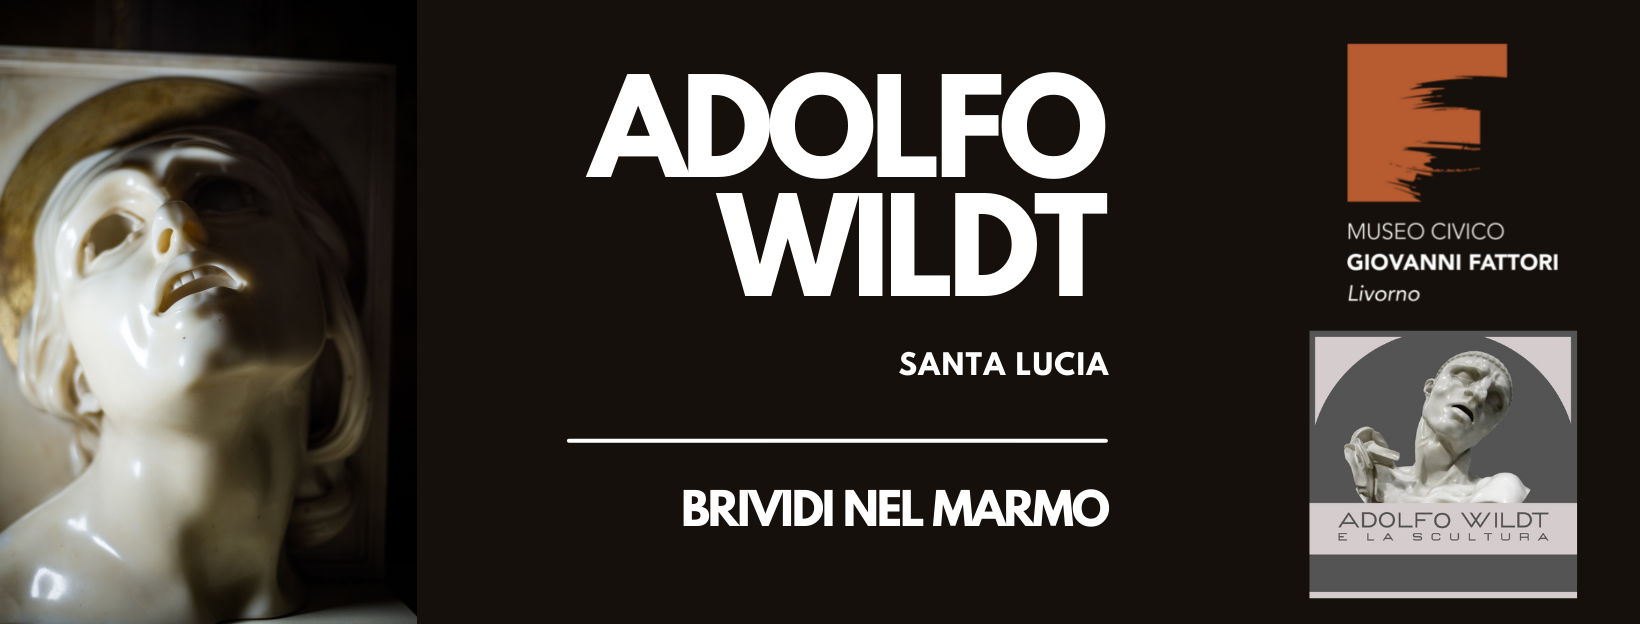 Evento Adolfo Wildt a Livorno